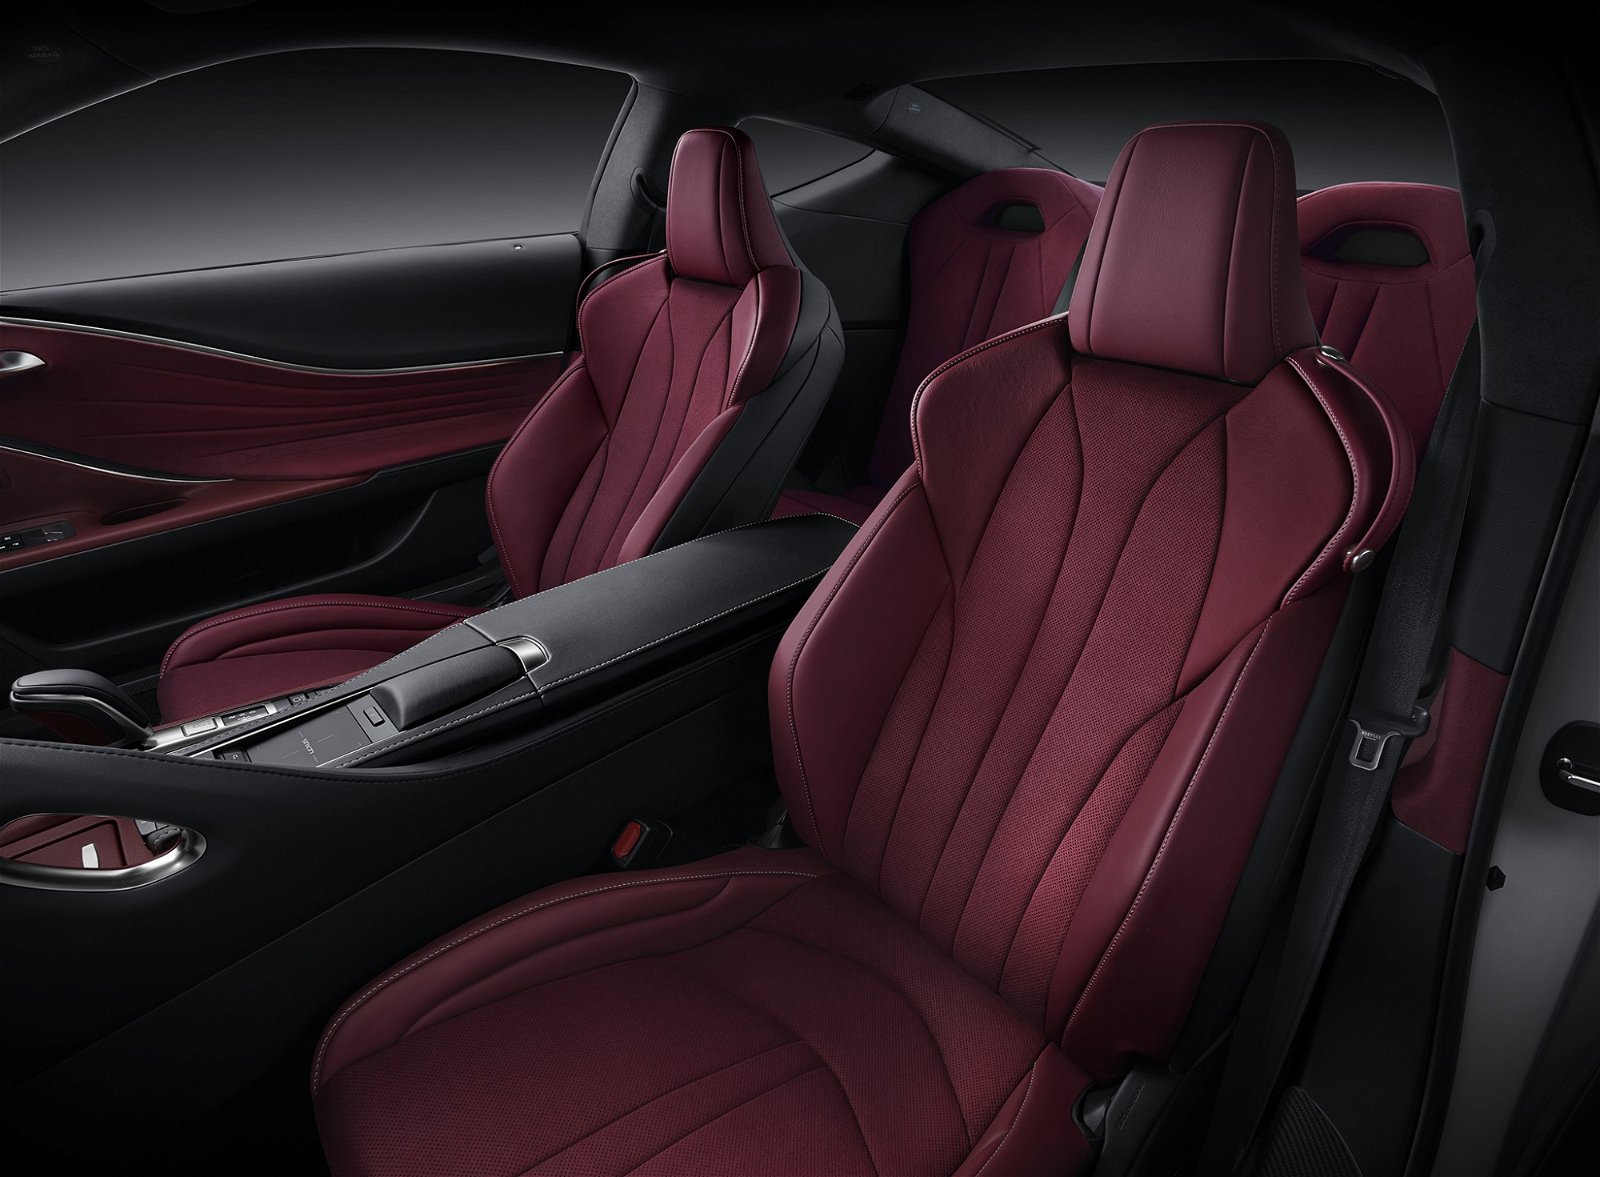 座舱使用真皮与麂皮包覆，提升车室内的豪华质感。